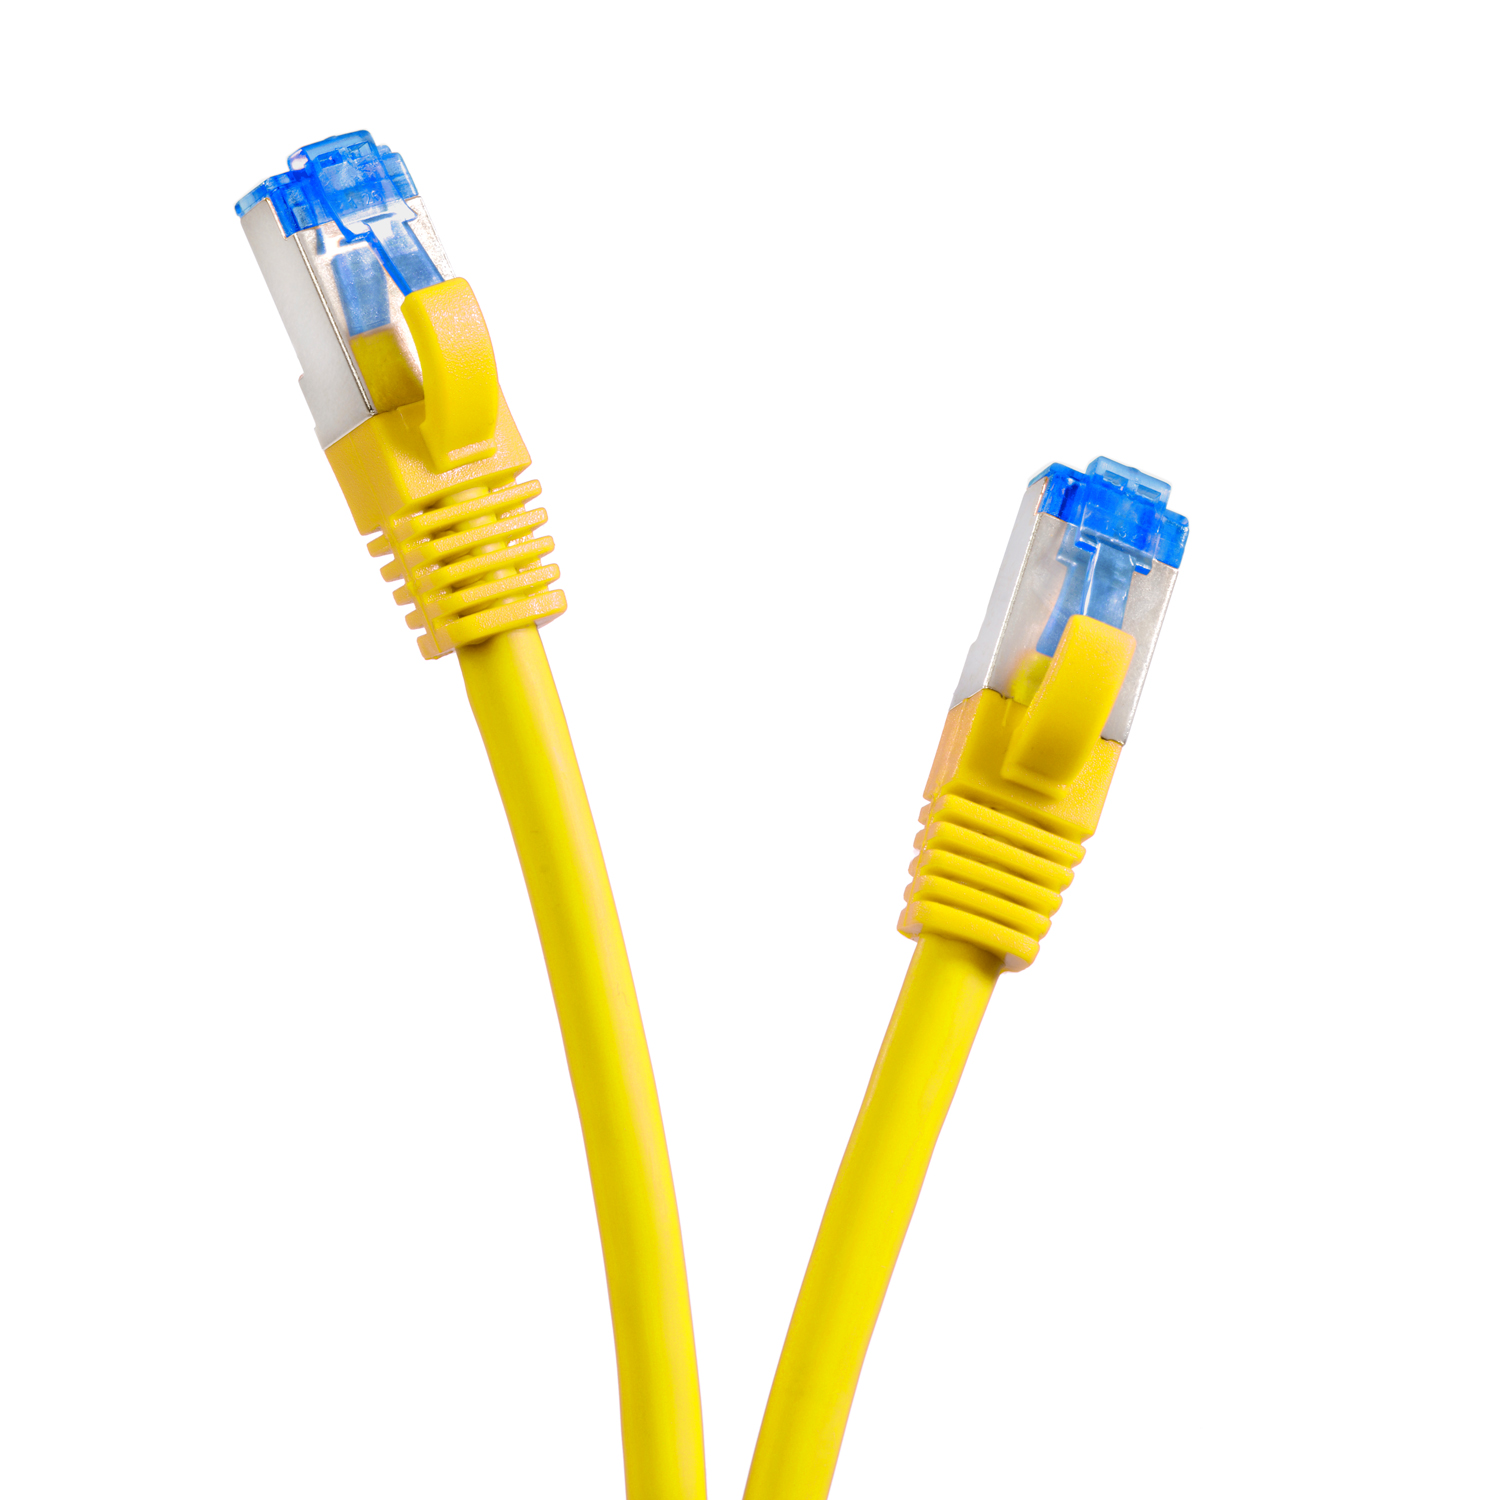 / Netzwerkkabel TPFNET gelb, Netzwerkkabel, 3m S/FTP Patchkabel 10GBit, 5er Pack m 3